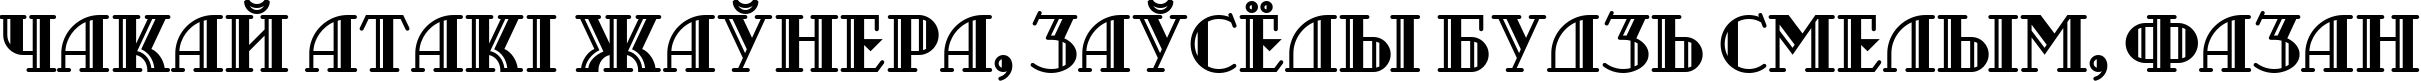 Пример написания шрифтом Castileo Medium текста на белорусском